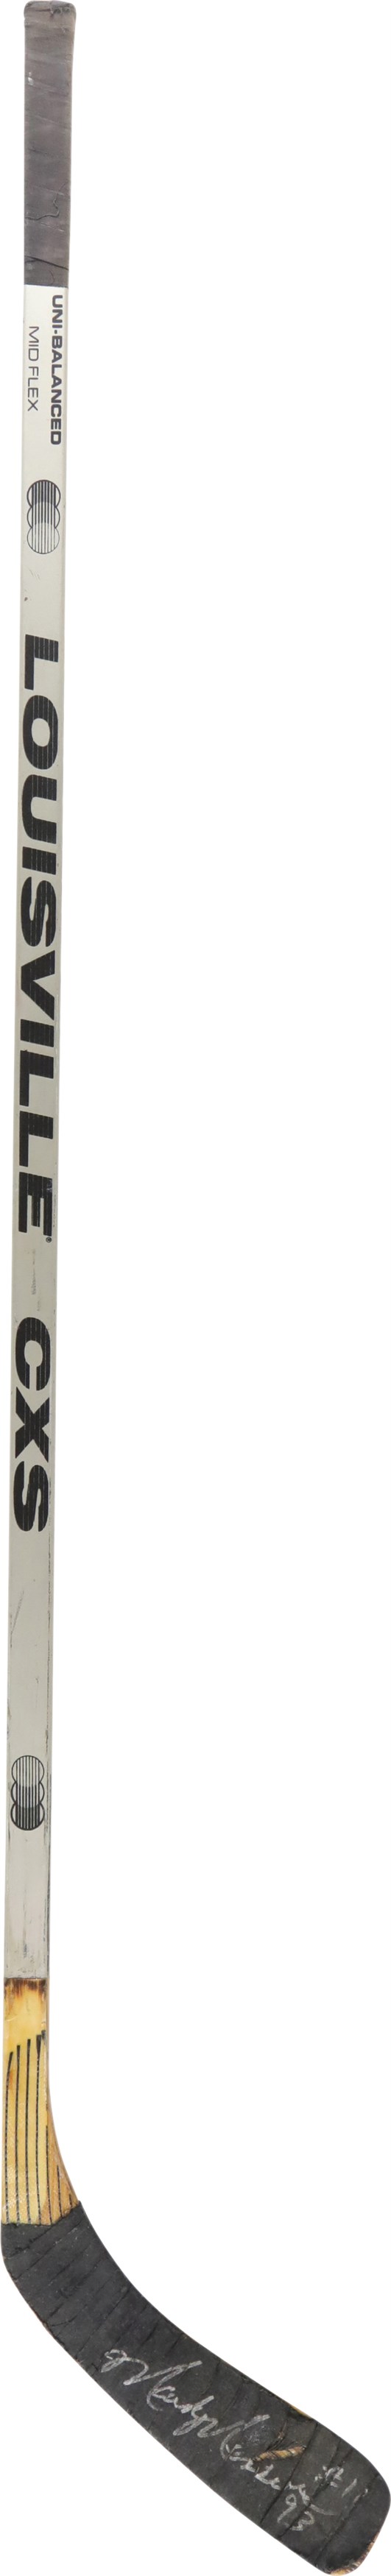 - 1993 Mark Messier New York Rangers Signed Game Used Stick (PSA)